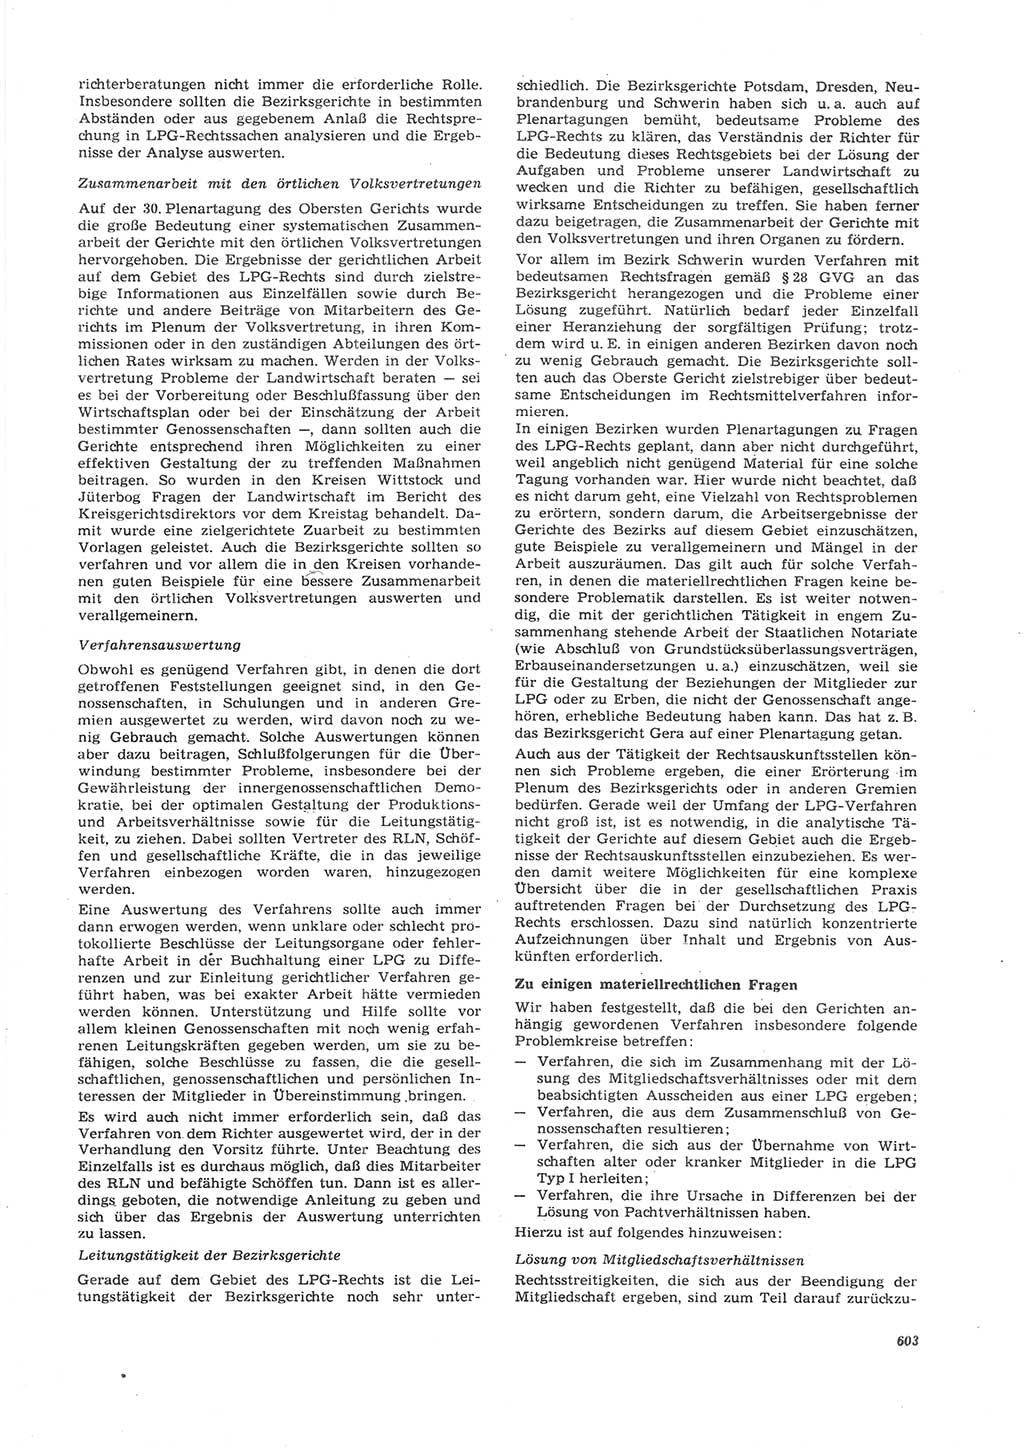 Neue Justiz (NJ), Zeitschrift für Recht und Rechtswissenschaft [Deutsche Demokratische Republik (DDR)], 26. Jahrgang 1972, Seite 603 (NJ DDR 1972, S. 603)